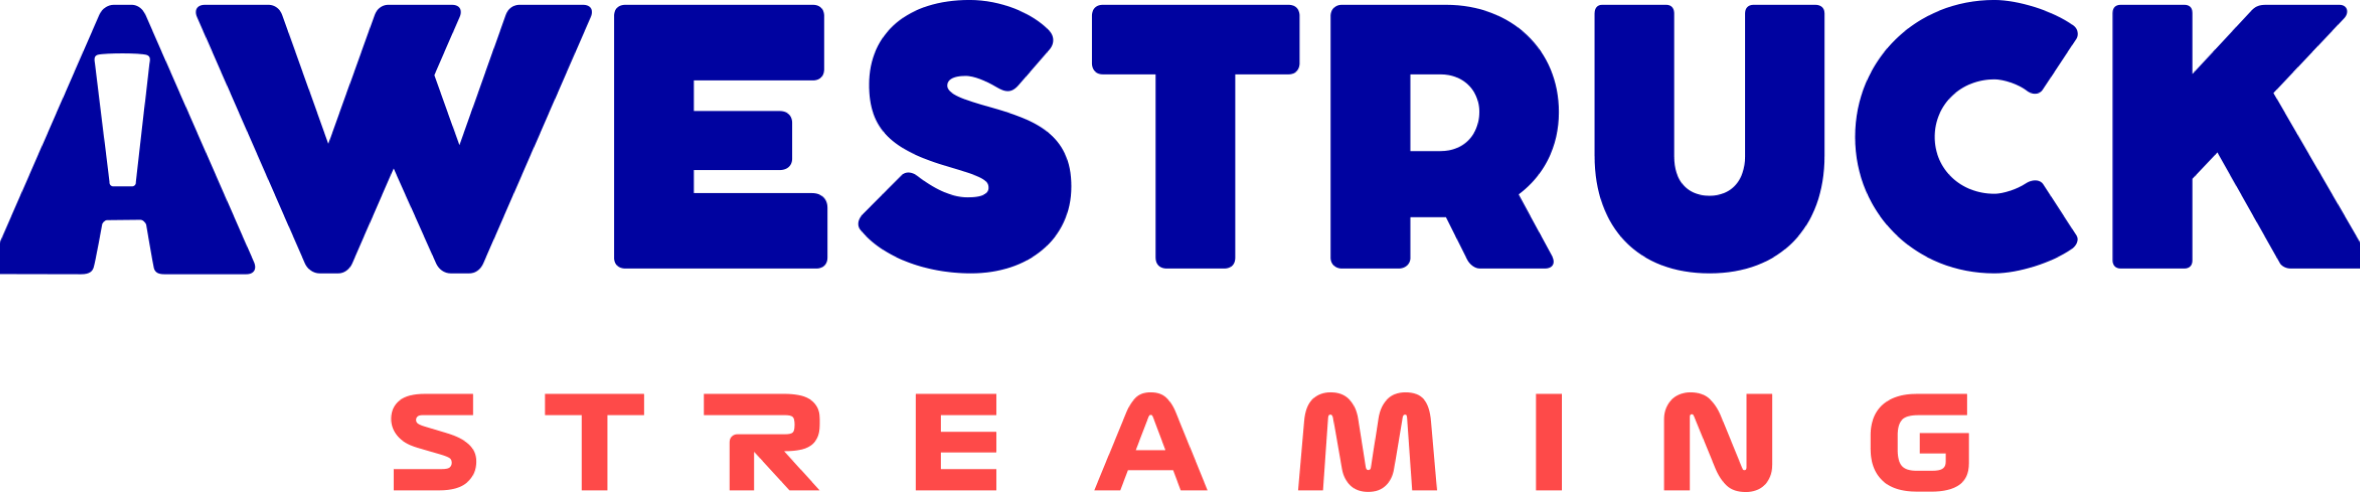 Awestruck Streaming Logo